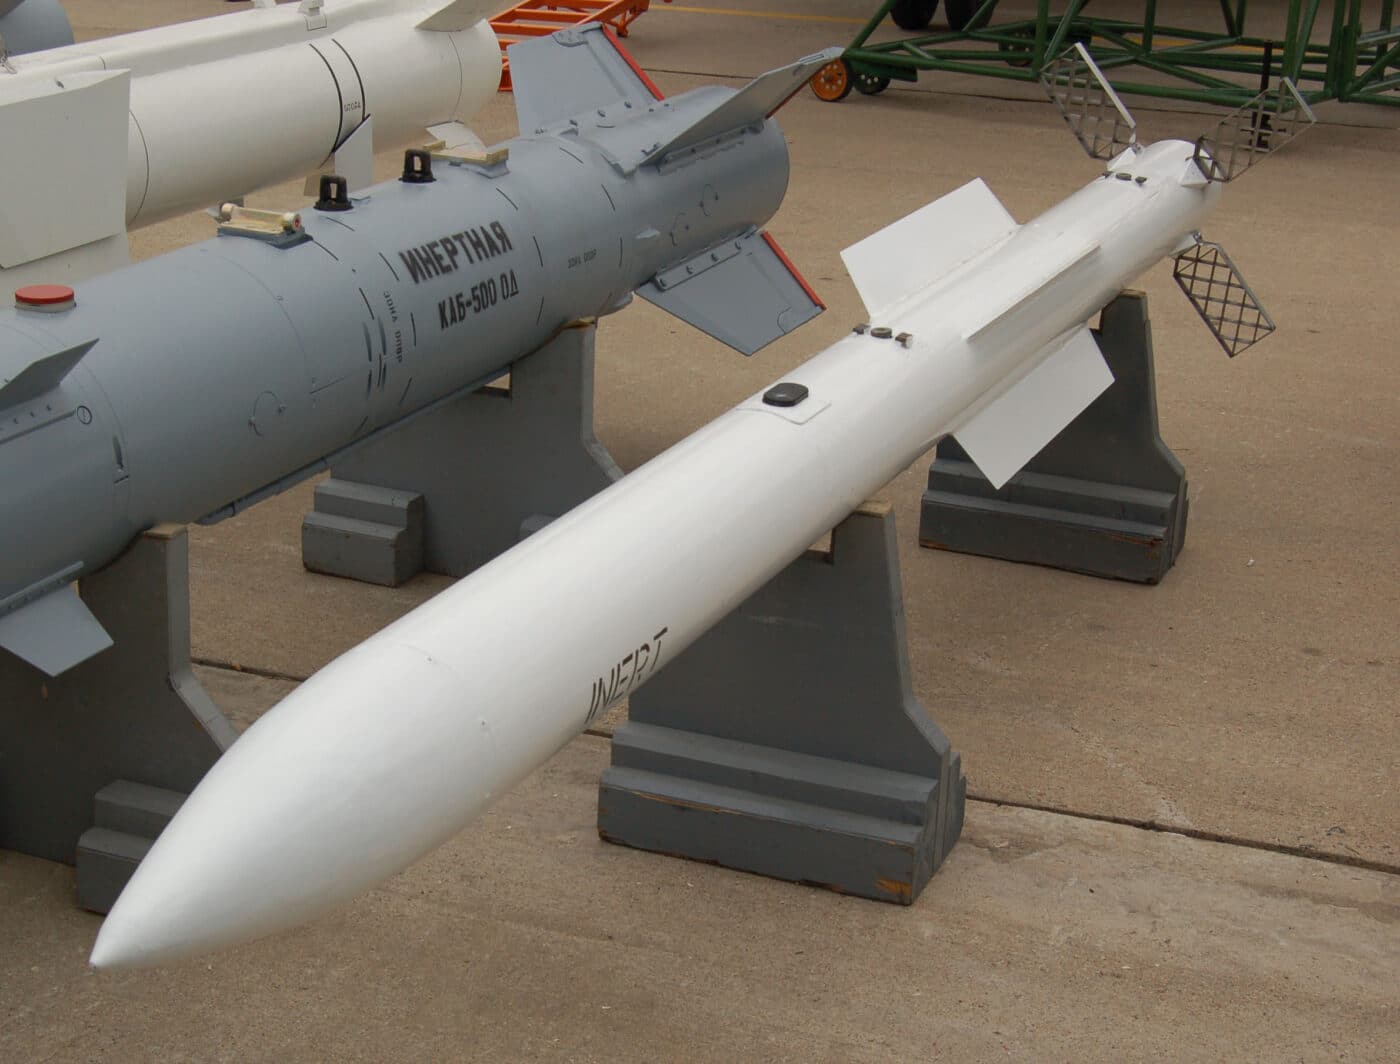 k-77m missile